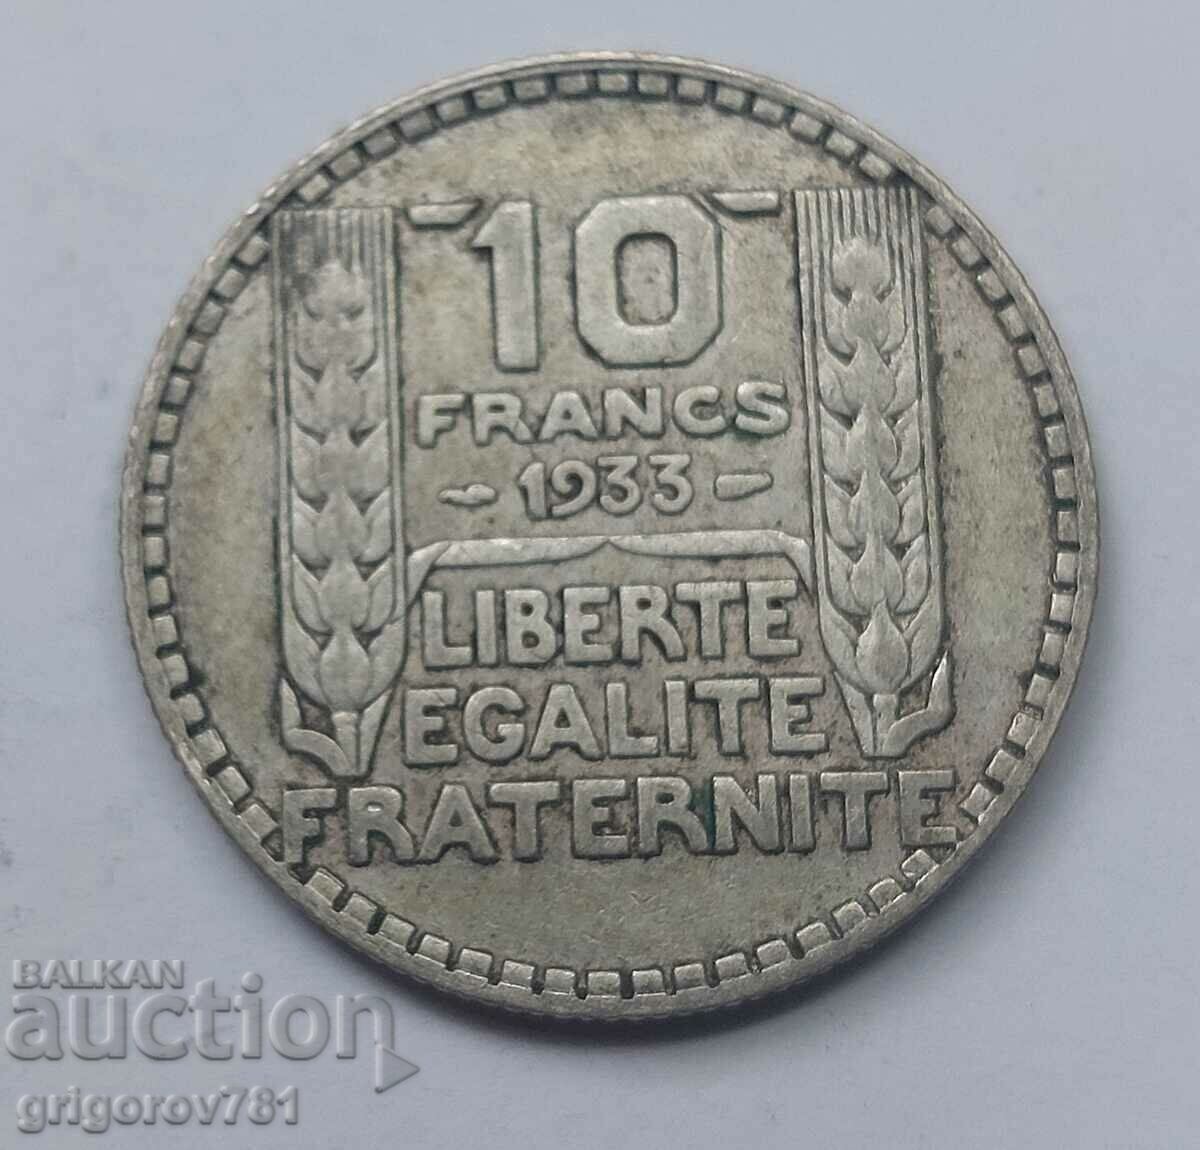 10 Franci Argint Franta 1933 - Moneda de argint #11